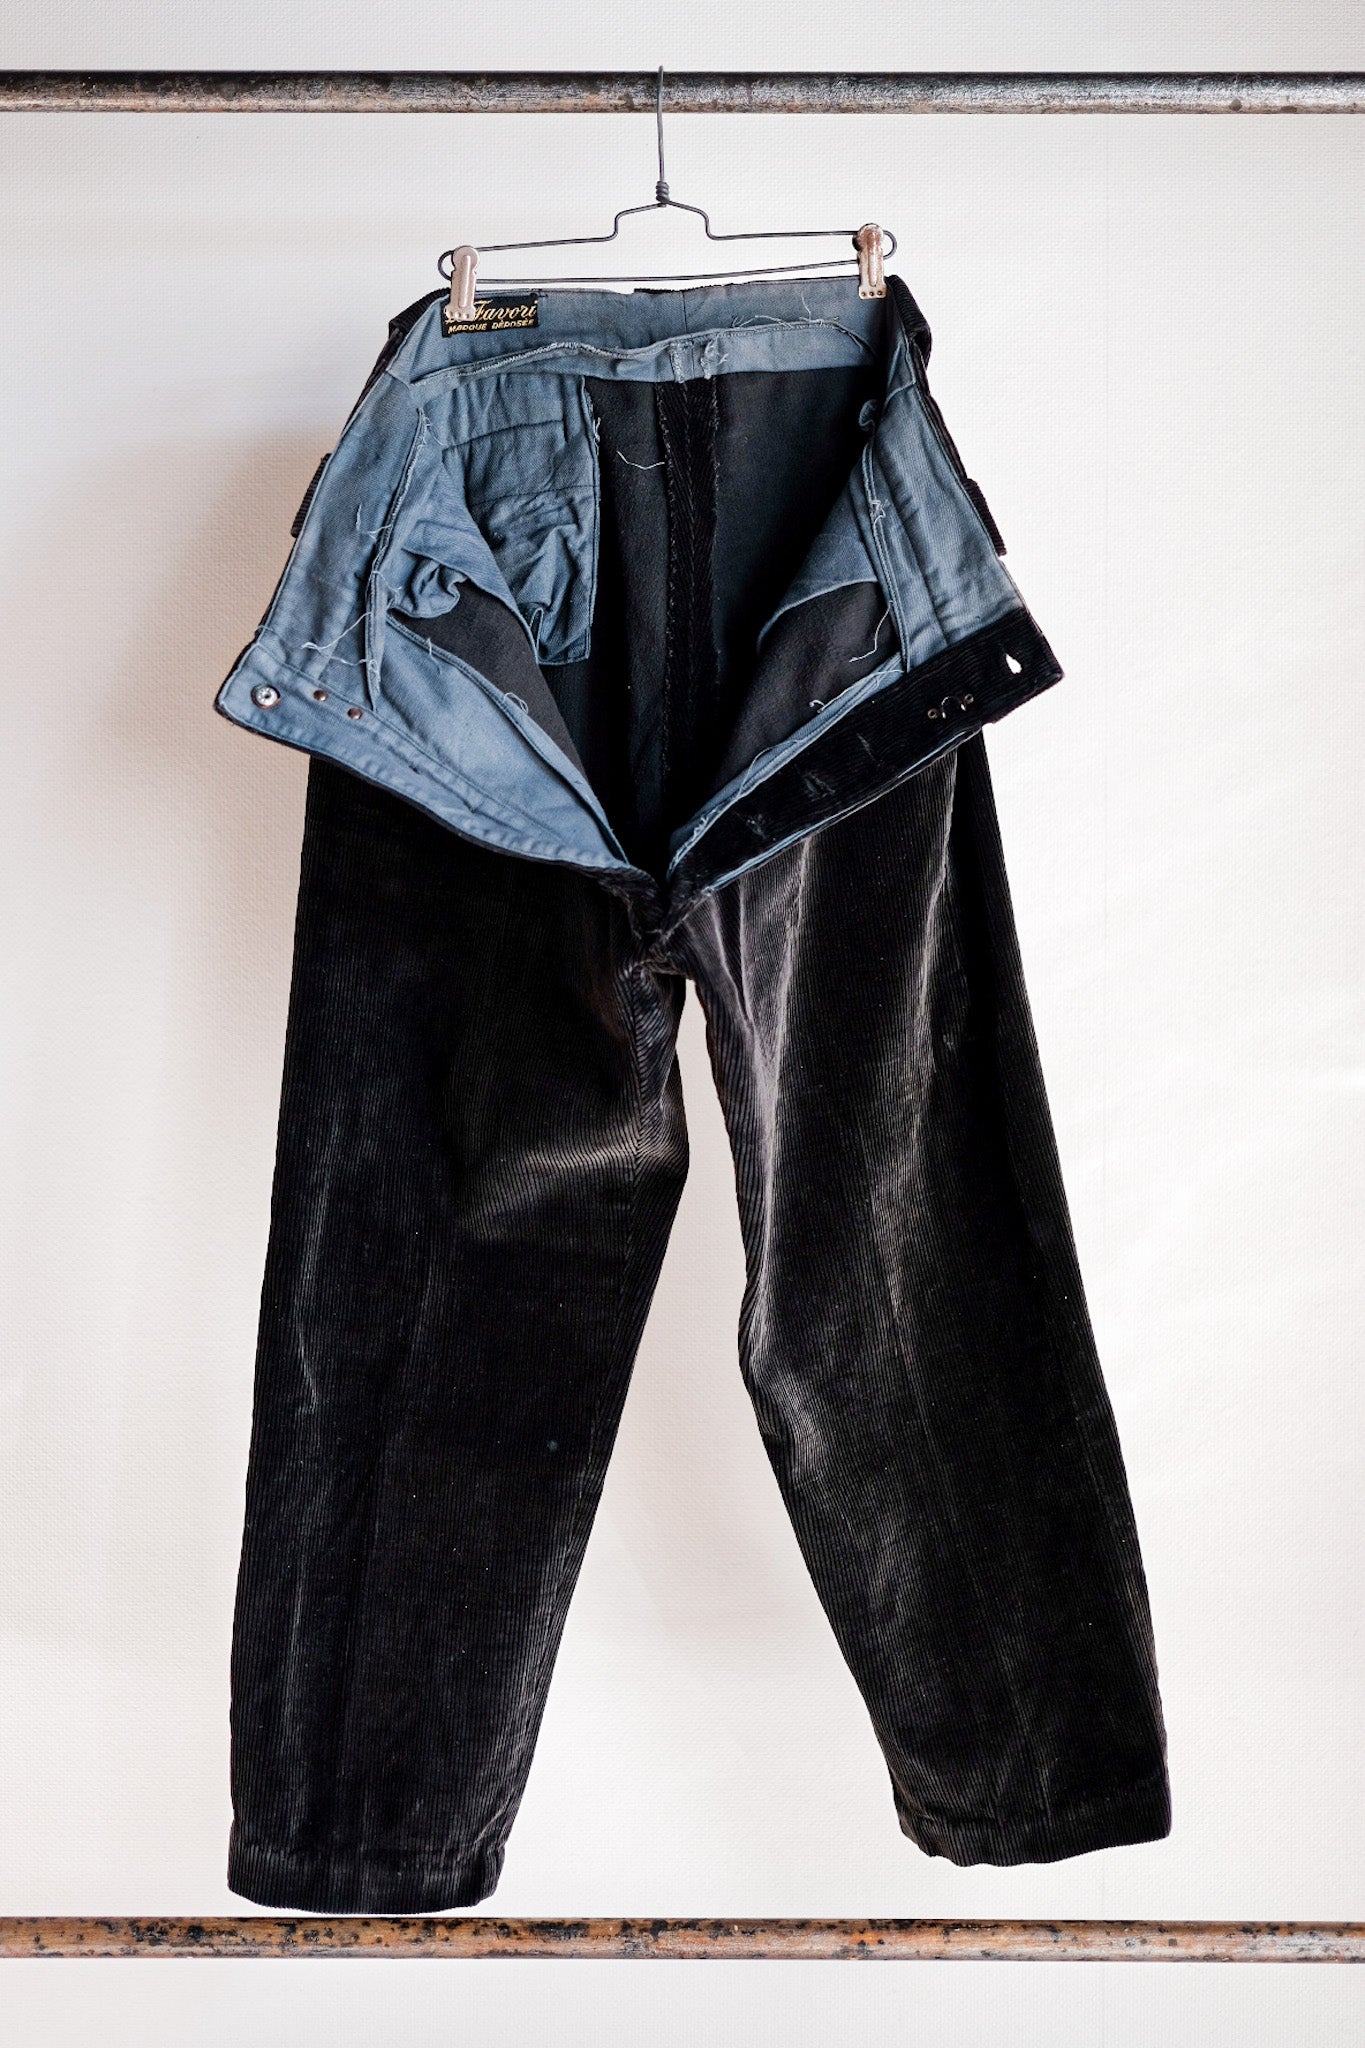 【~40's】French Vintage Dark Brown Corduroy Work Pants